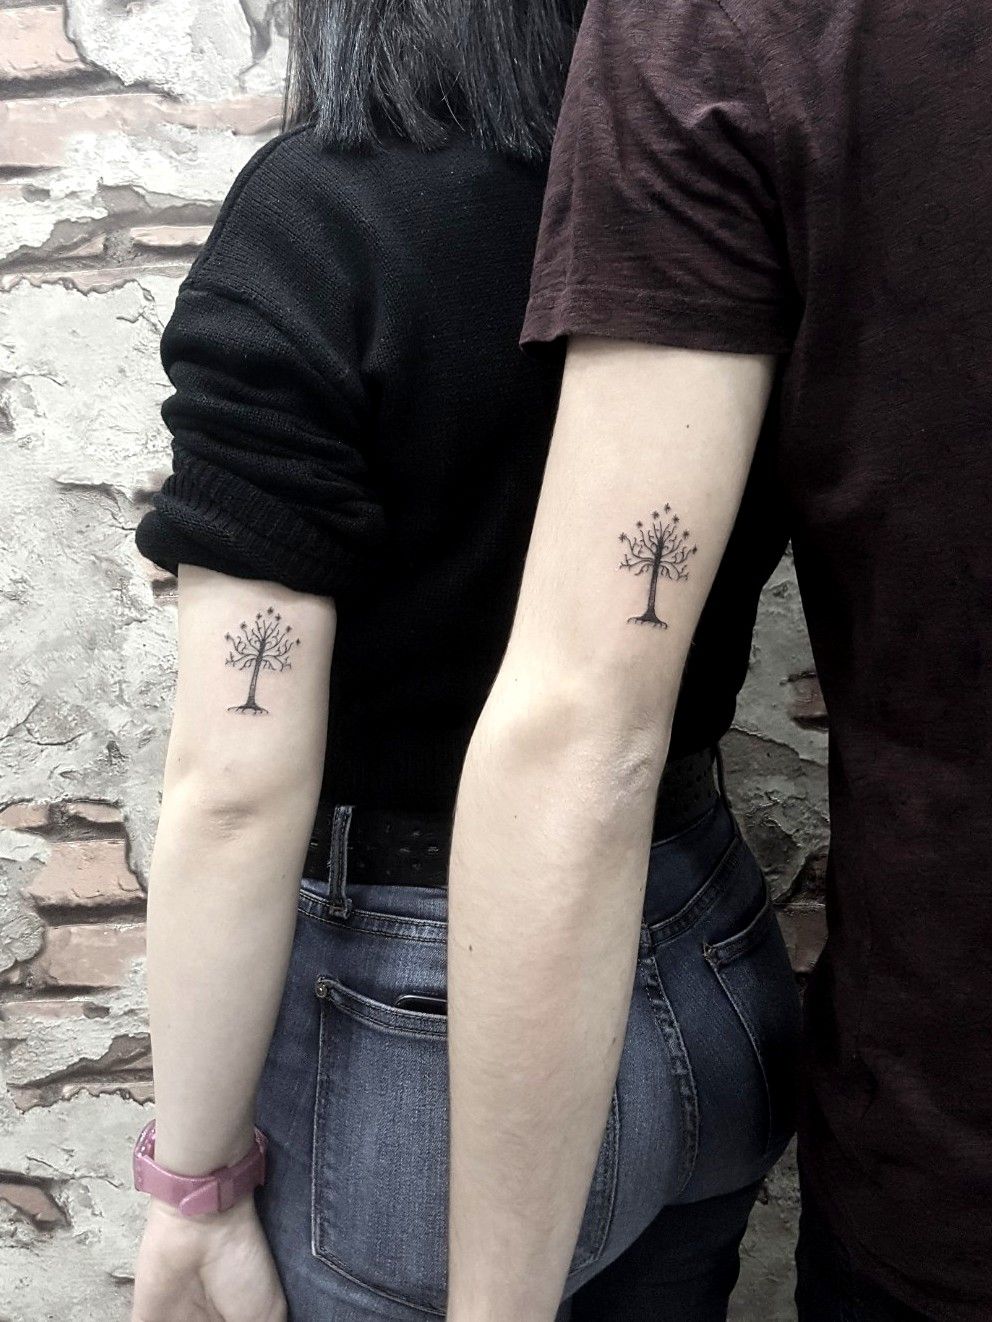 Tattoo uploaded by çağatay öner • Instegram@dovmekulturu • Tattoodo